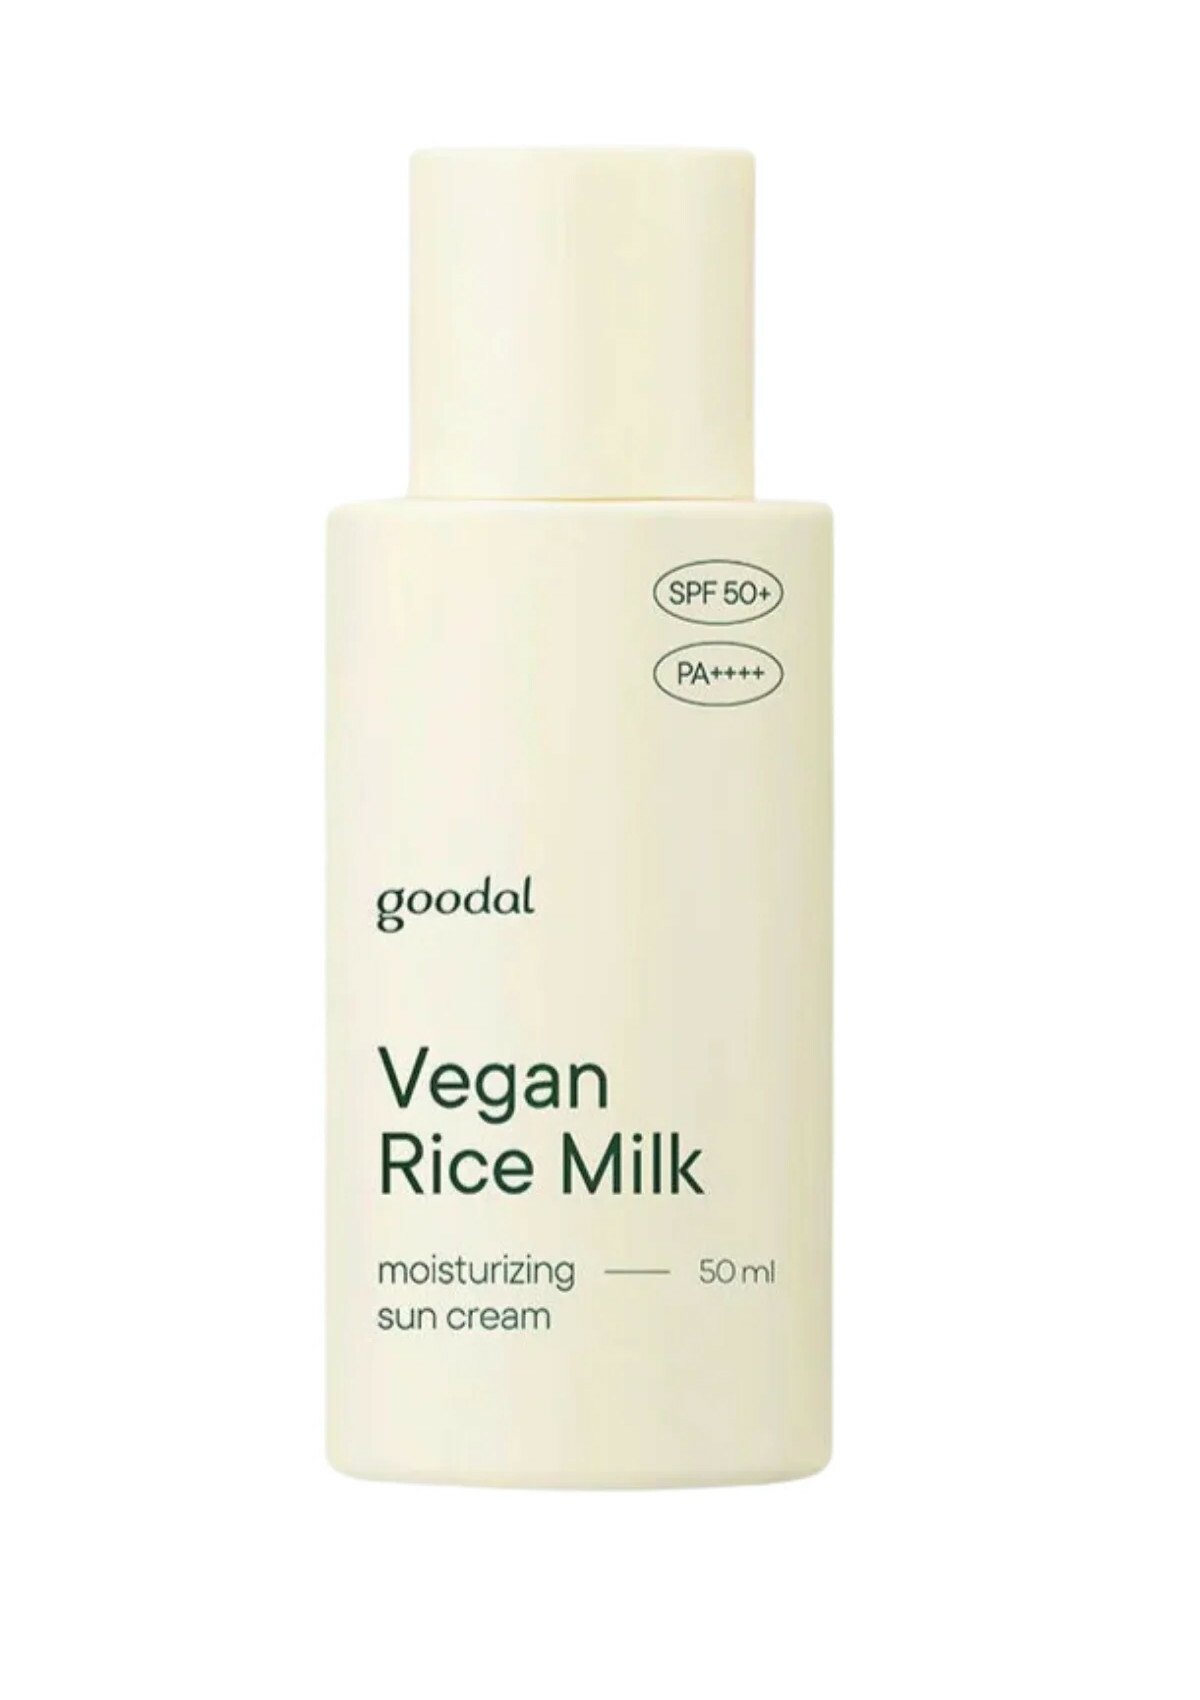 goodal Vegan Rice Milk Moisturizing Sun Cream SPF 50 50ml